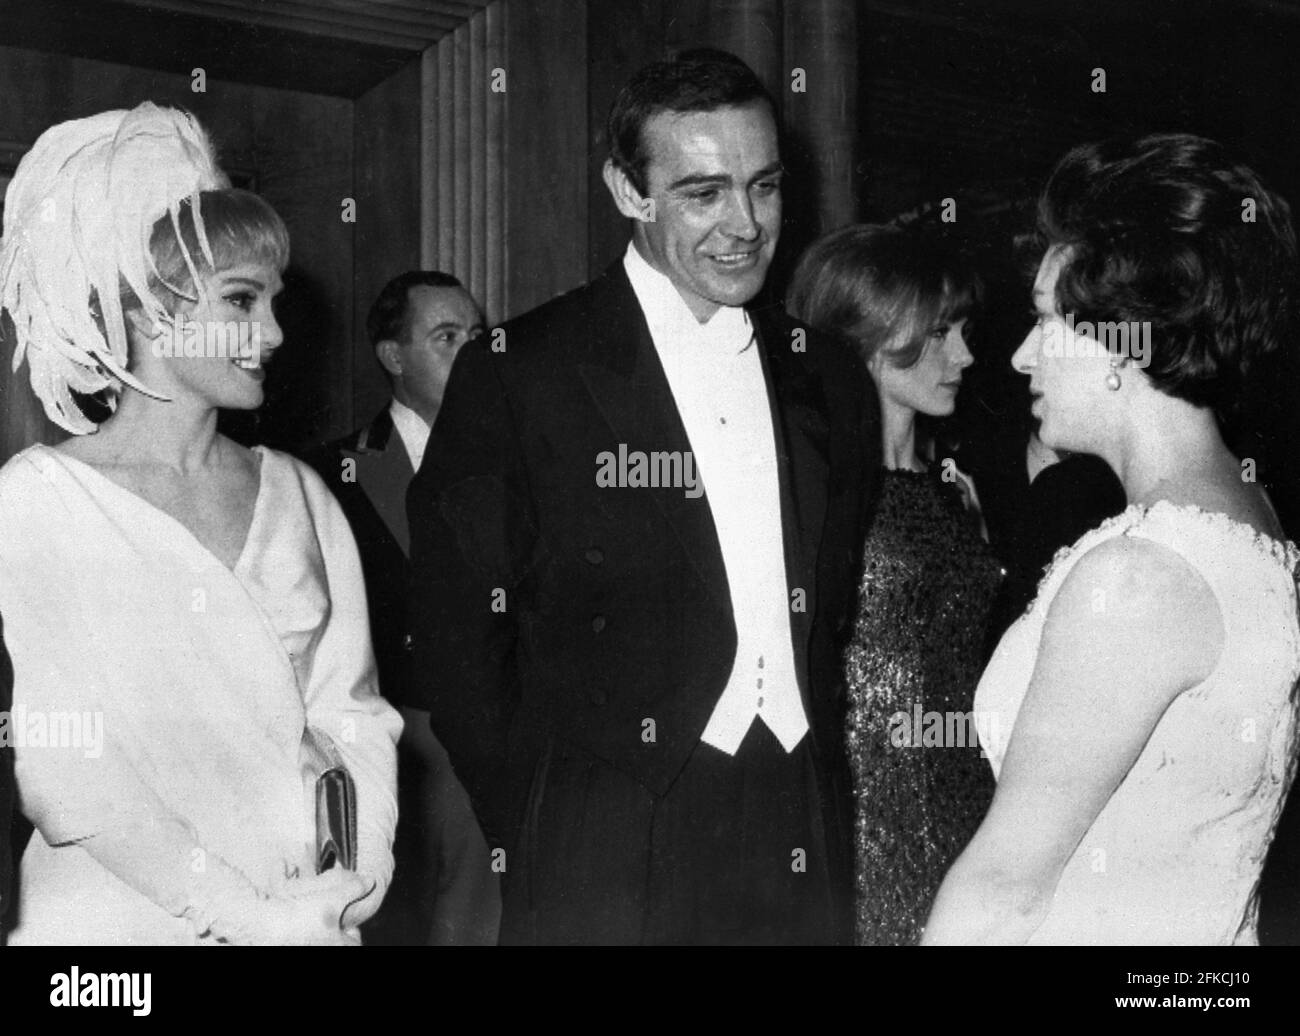 El actor Sean Connery y su esposa, la actriz estadounidense Diane Cilento, se presentan a la princesa Margaret el 15 de febrero de 1965, durante la actuación cinematográfica real de 'Lord Jim' Foto de stock